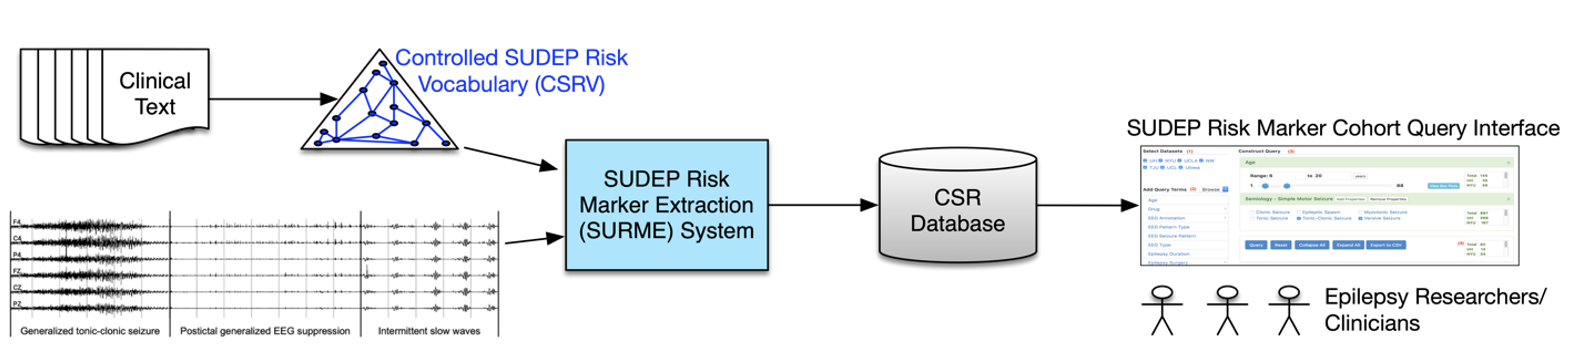 Informatics-framework-sudep-risk-marker.jpg